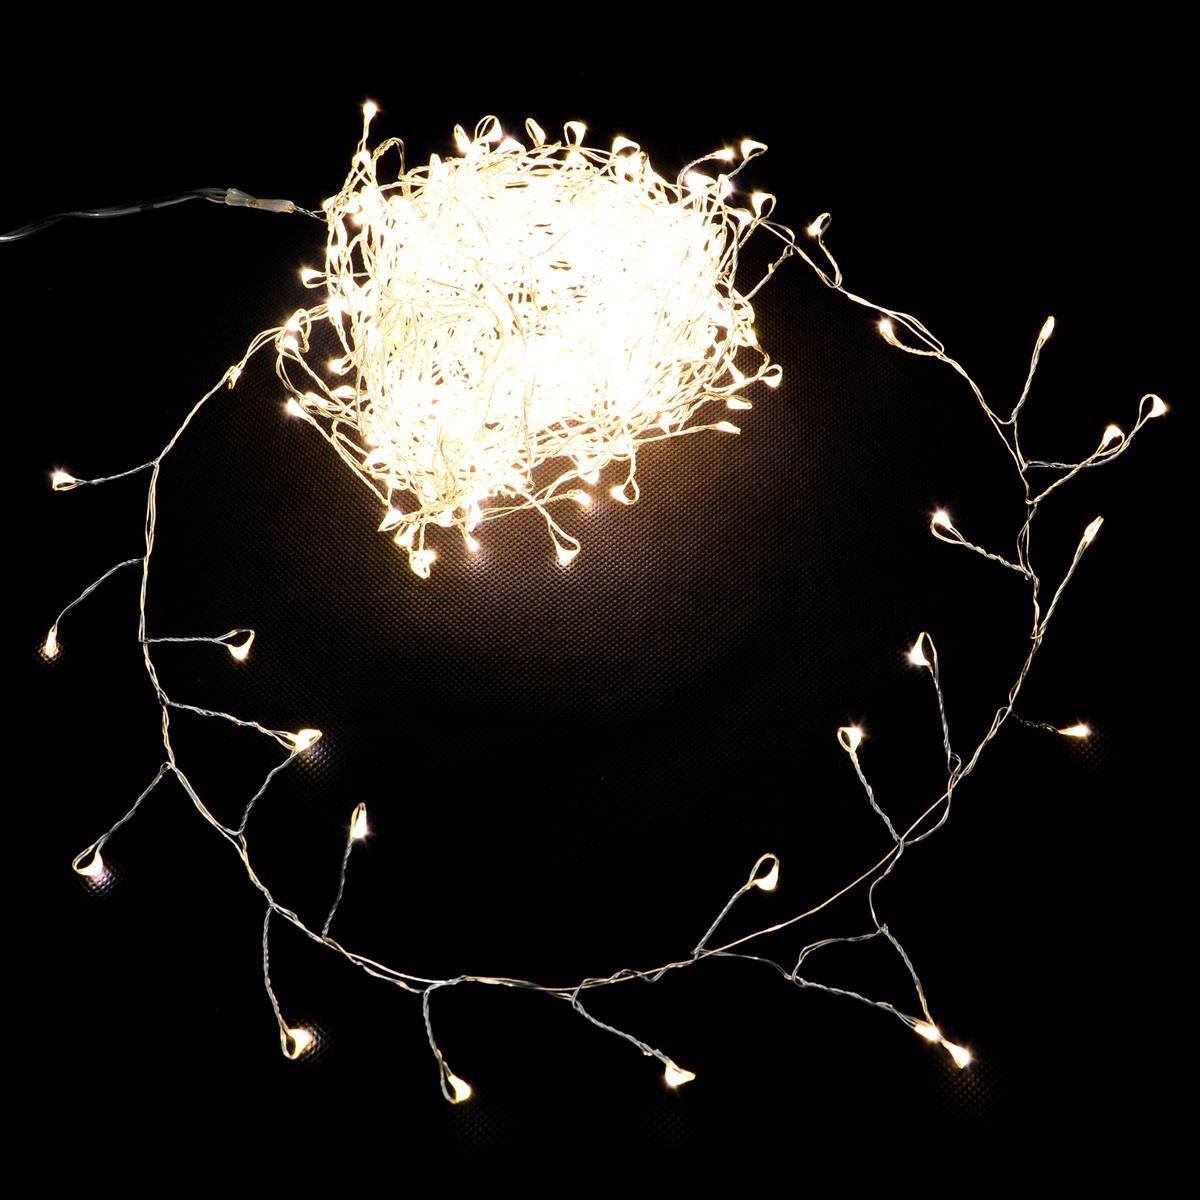 Büschellichterkette Cluster Silberdraht 300 LED warm weiß Trafo Weihnachtsdeko 